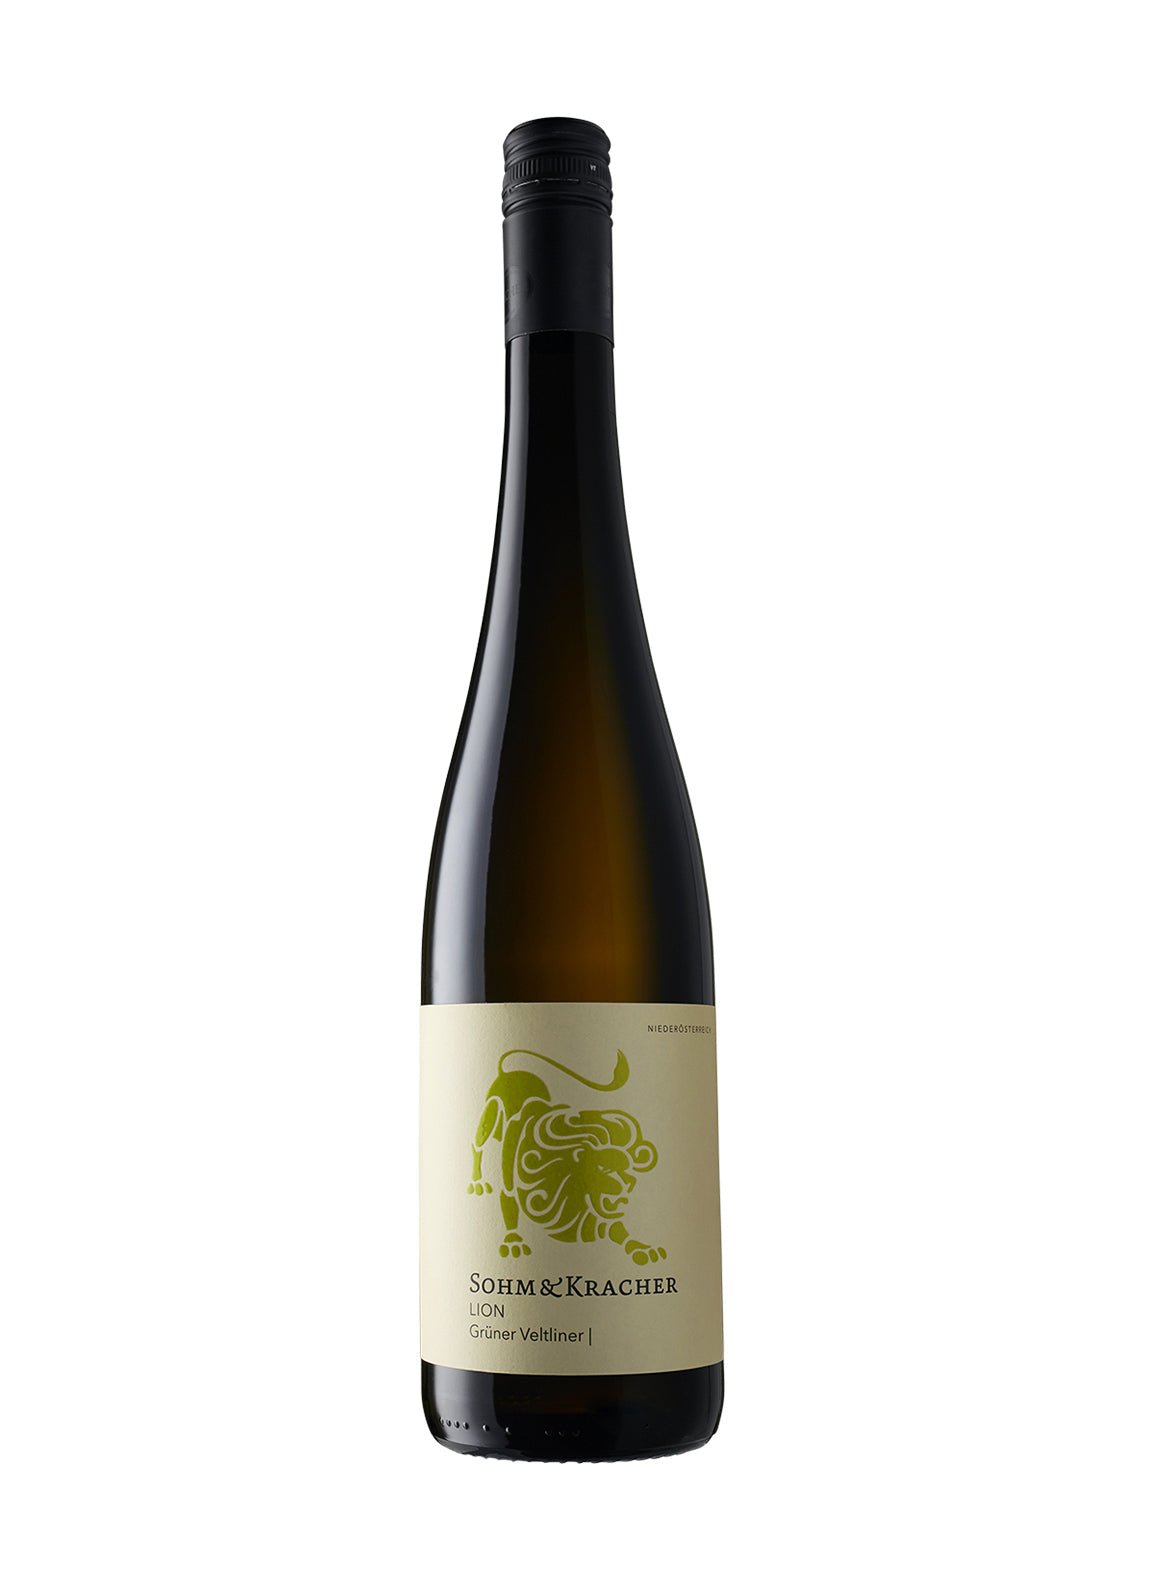 Sohm & Kracher 'Lion' Gruner Veltliner 2019 - Wine France White - Liquor Wine Cave